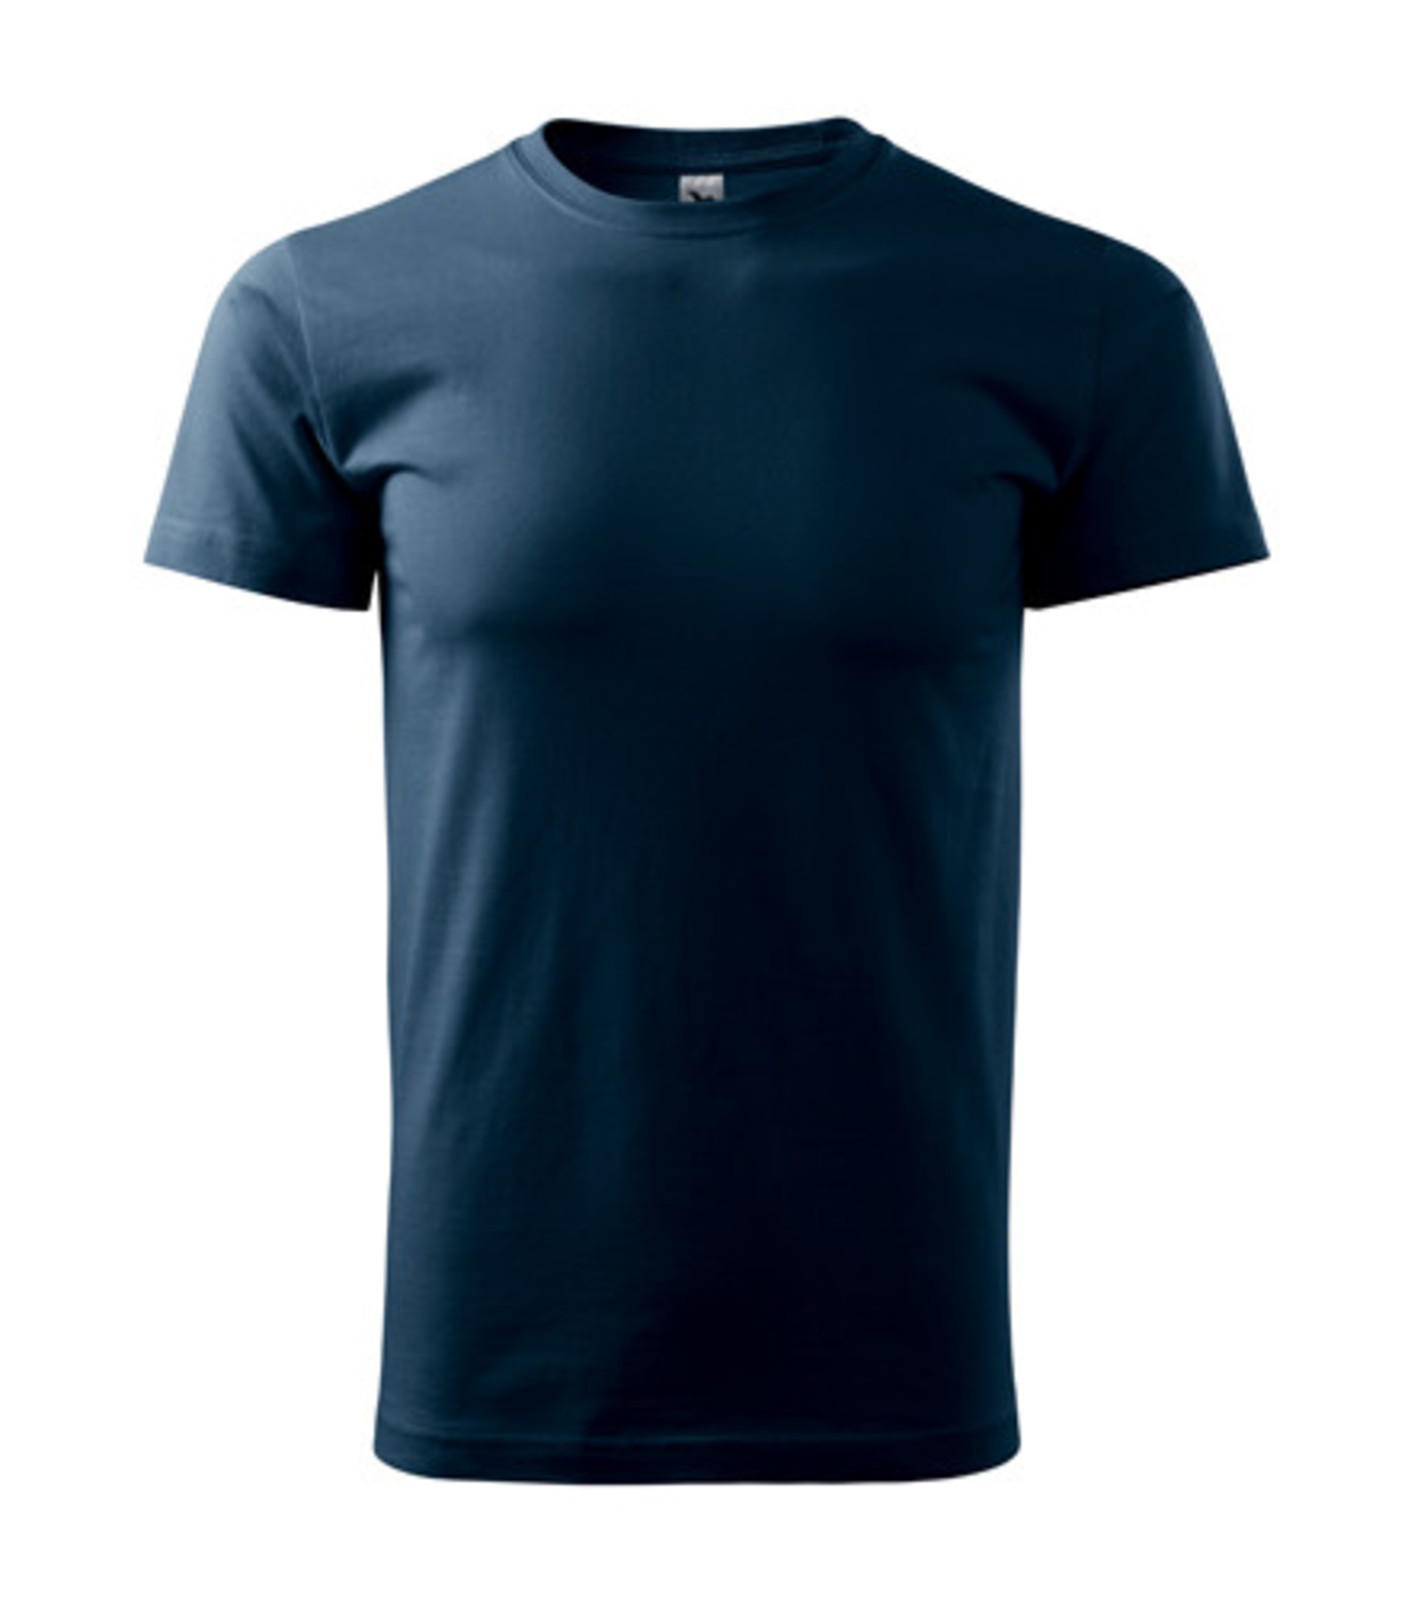 Unisex tričko Malfini Heavy New 137 - veľkosť: XXL, farba: tmavo modrá